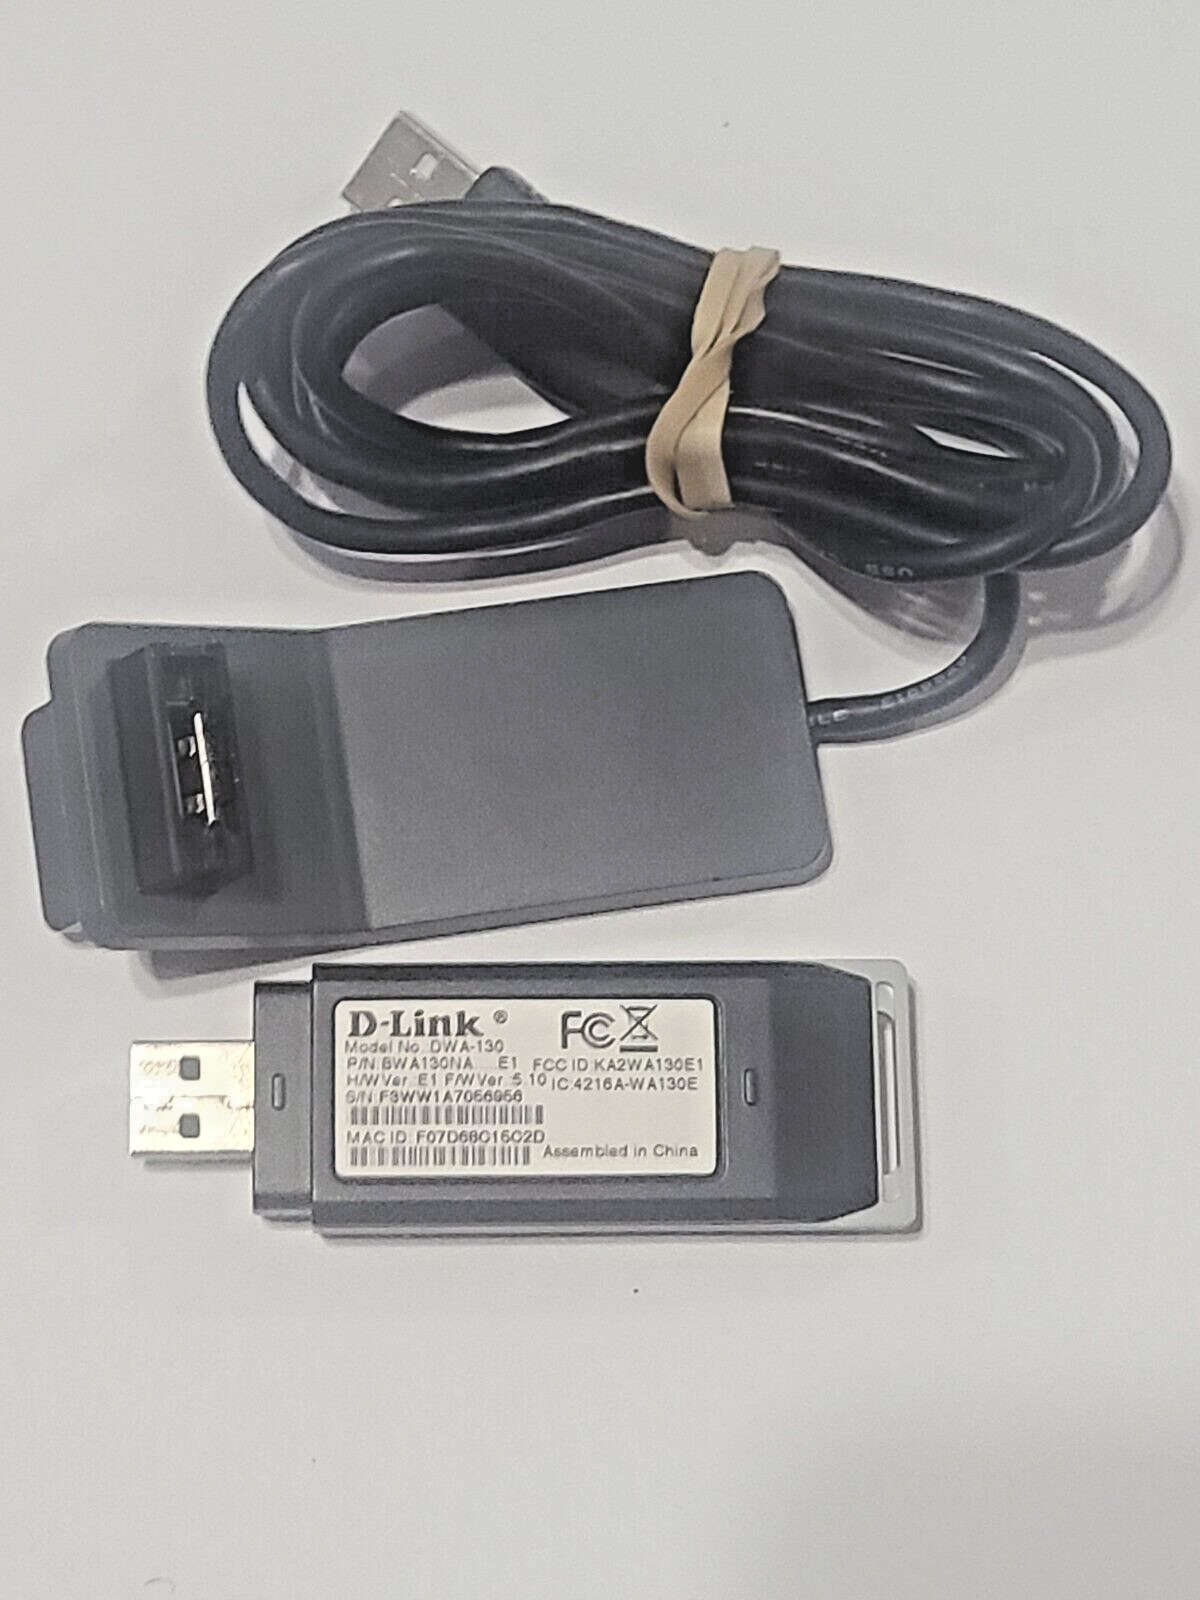 D-Link DWA-130 WiFi USB Adapter Wireless N 300